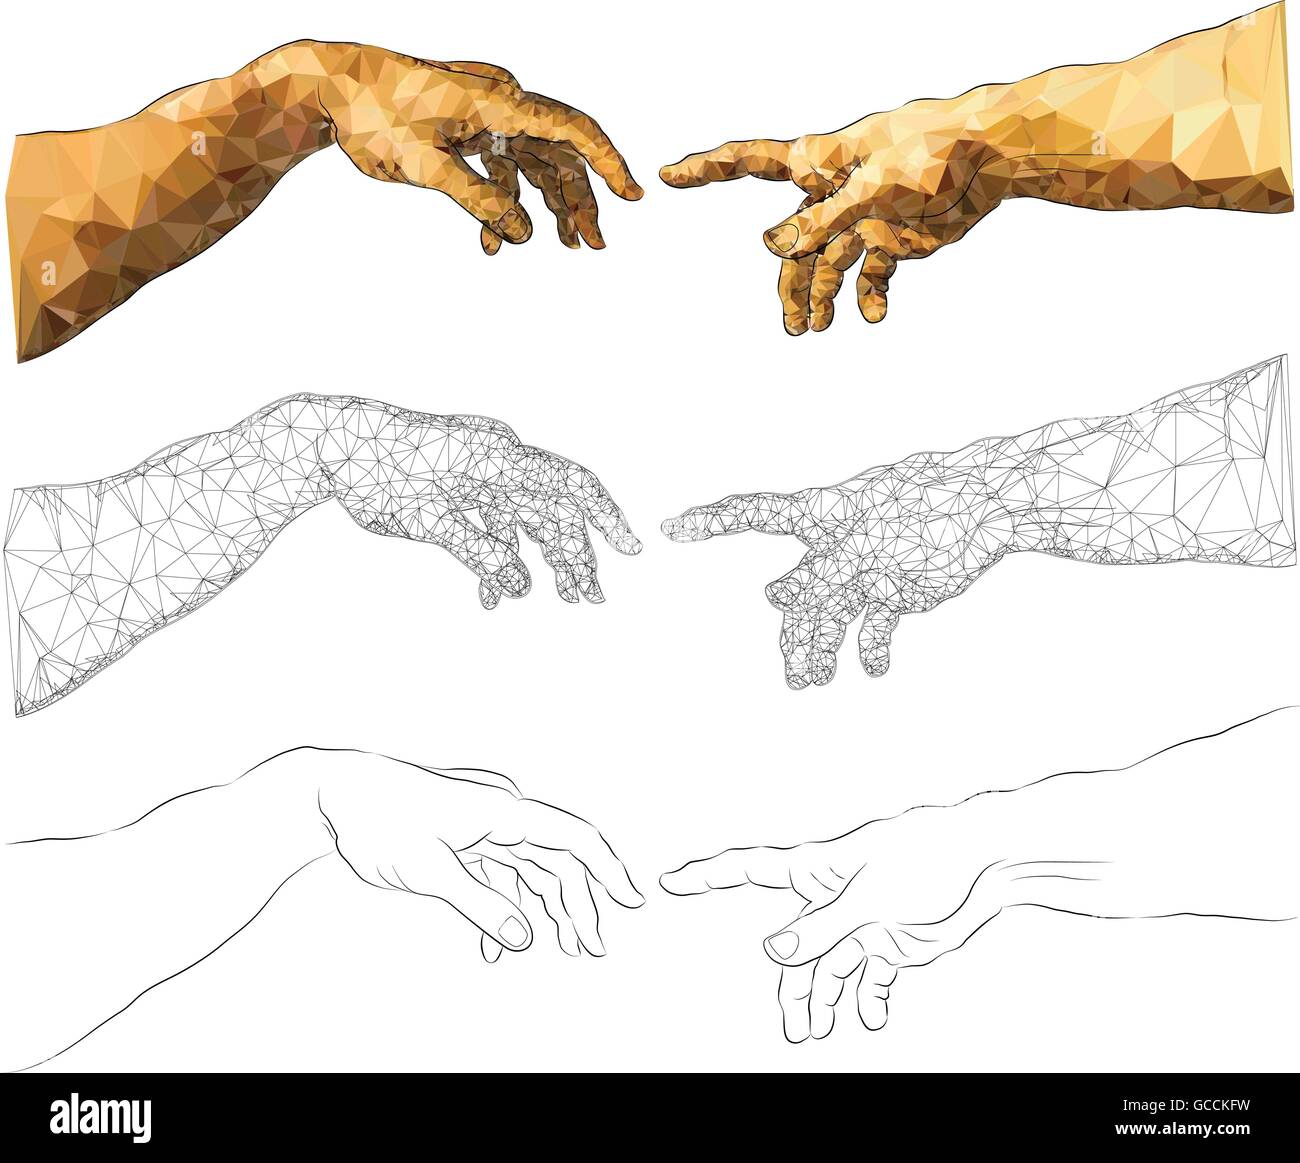 Michelangelo hands immagini e fotografie stock ad alta risoluzione - Alamy